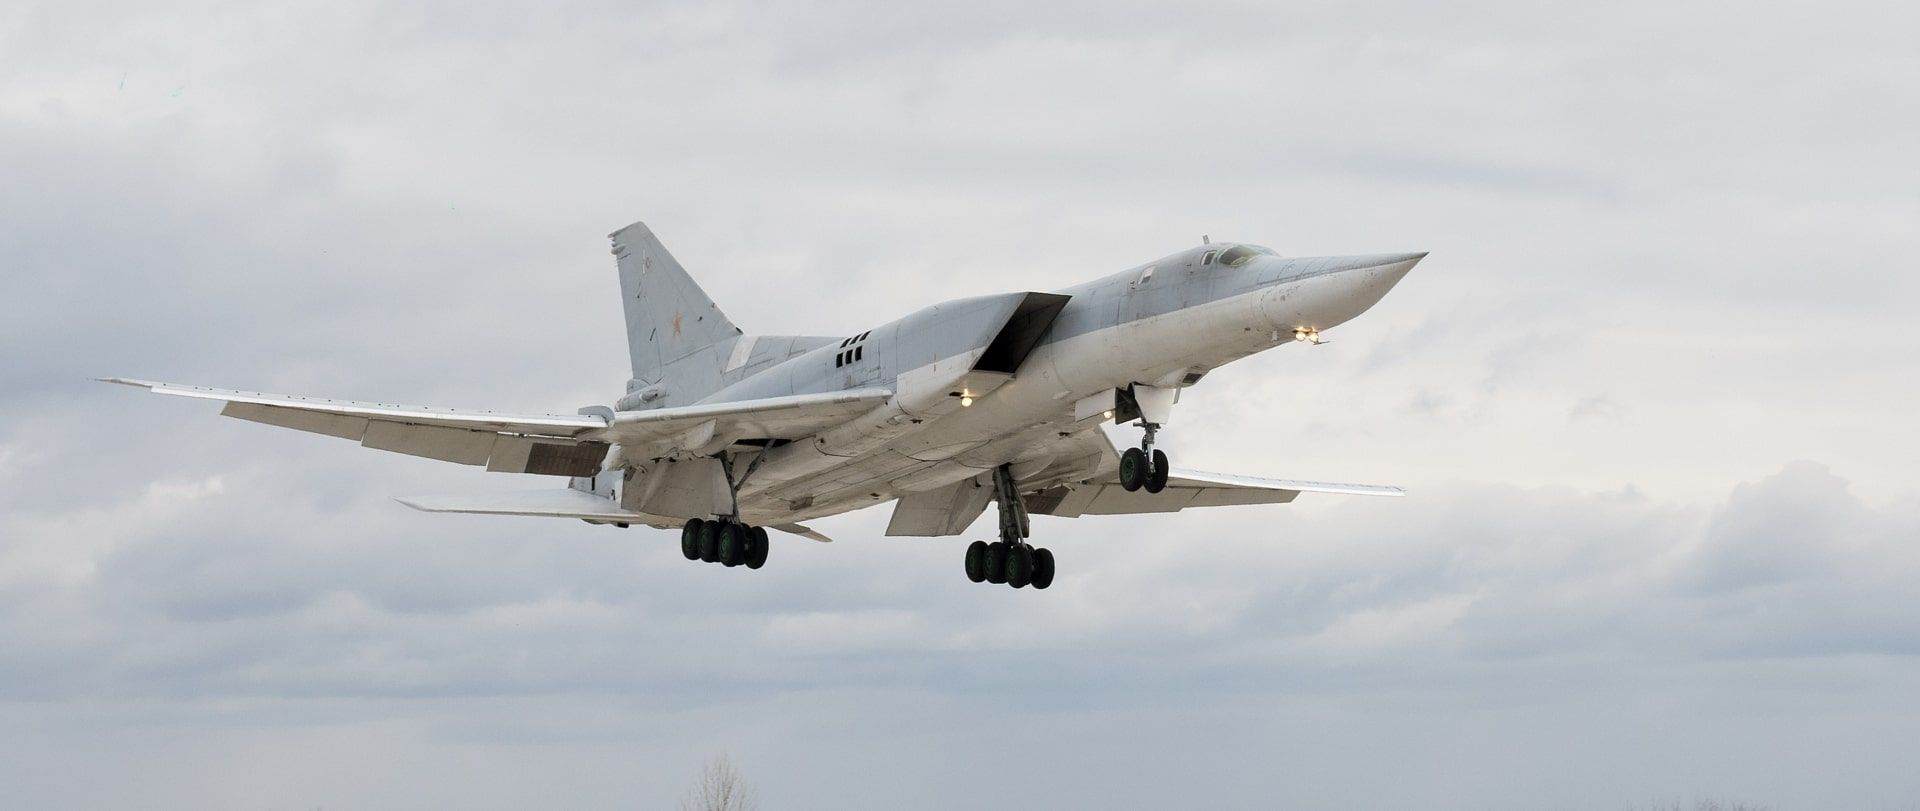 La Russia ha confermato ufficialmente che un drone ucraino Tu-141 modificato in missile ha danneggiato 3 bombardieri-missili strategici Tu-22M3.